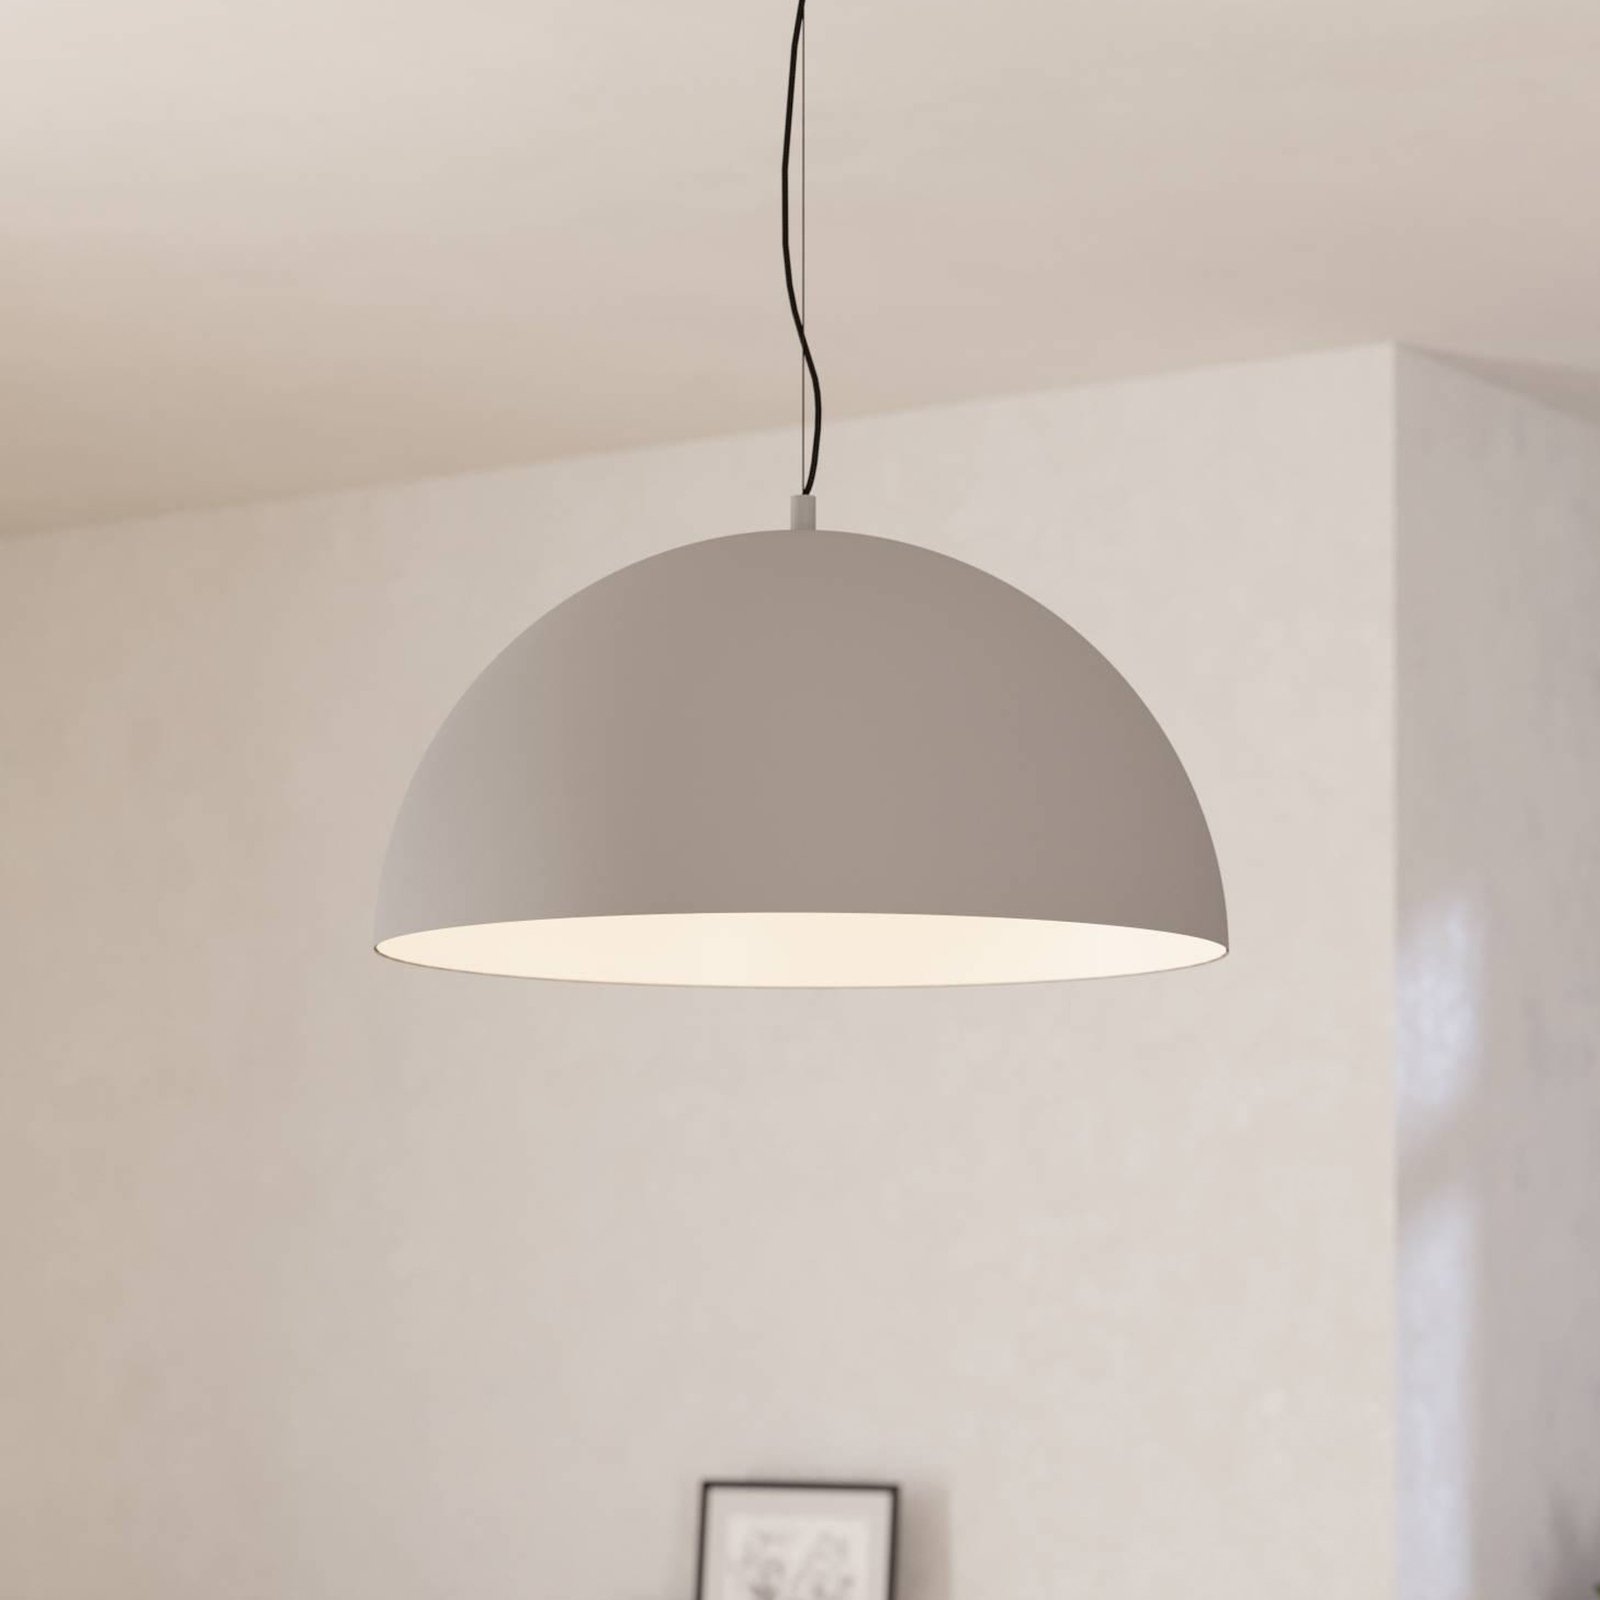 Gaetano 1 hanglamp, Ø 53 cm, grijs/wit, staal